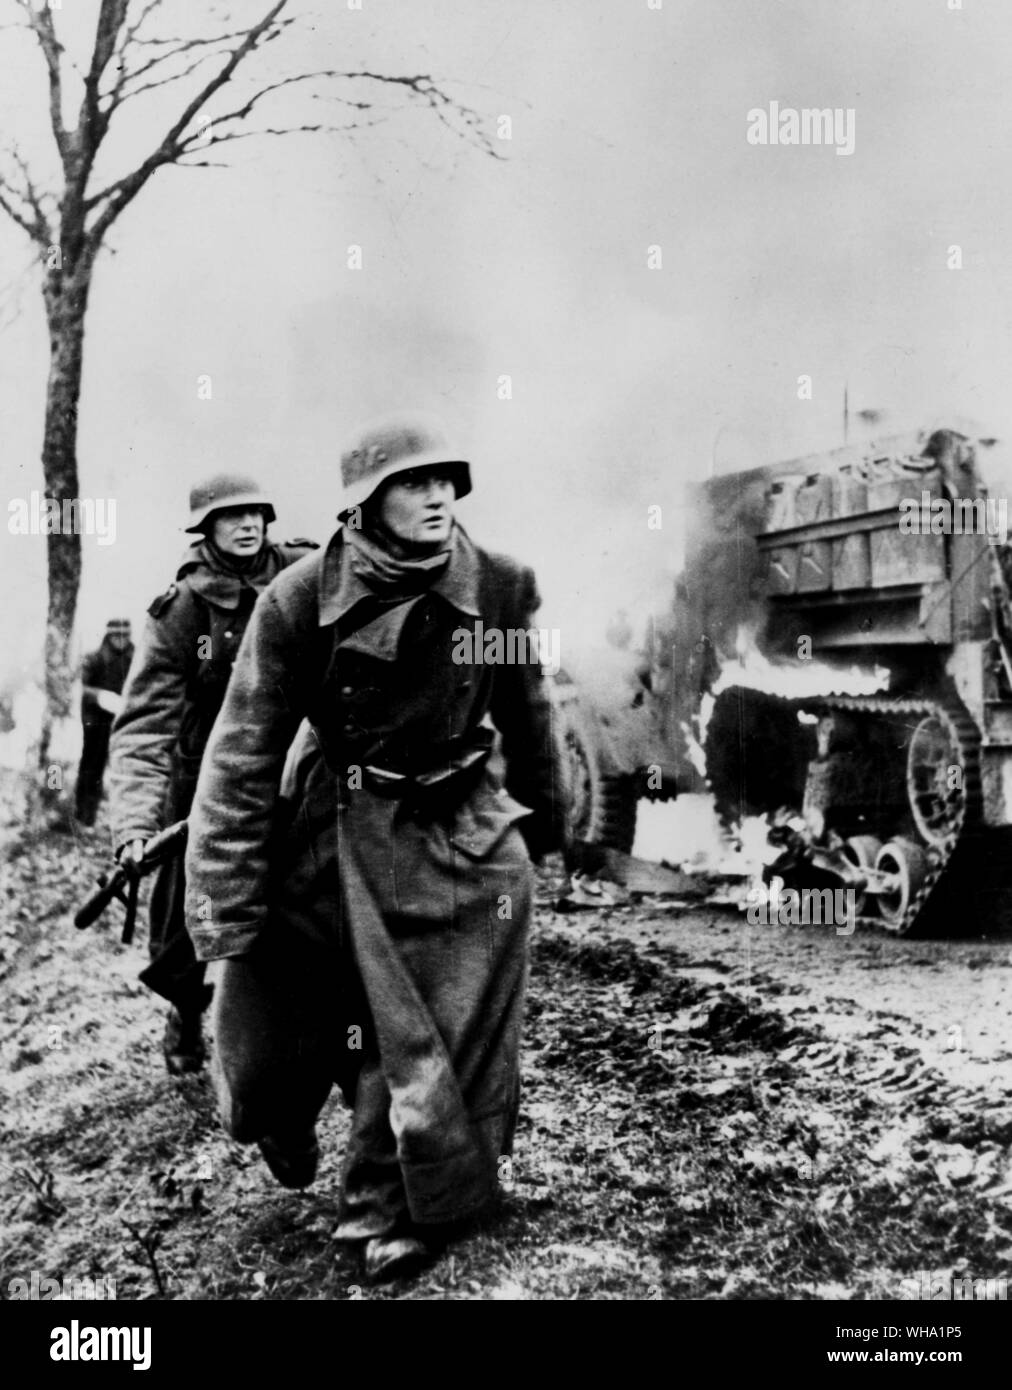 WW2 : les troupes allemandes contourner burning American demi-piste véhicule. 1944 Décembre - Janvier1945. Campagne des Ardennes. Banque D'Images